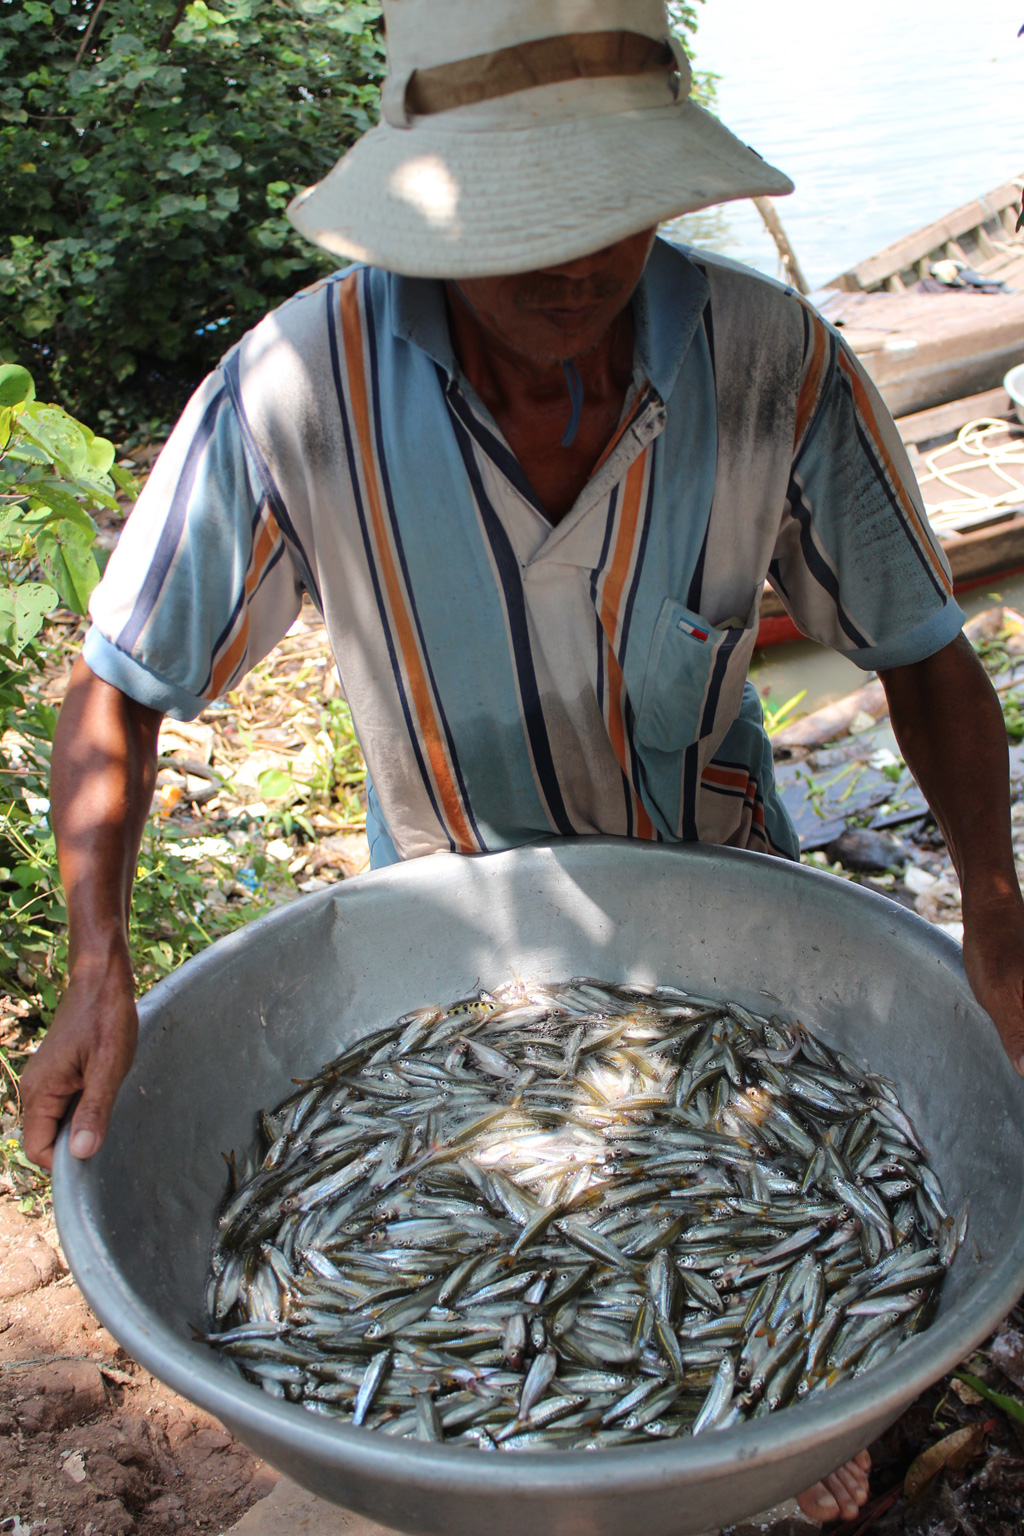 Sau cả đêm vất cả giăng lưới trên sông Hậu, ông Nguyễn Văn Diều, 60 tuổi, ngư dân ở xóm Đáy, xã Mỹ Hoà, thị xã Bình Minh, Vĩnh Long thu được hơn 2 kg cá lòng tong, không có một con cá lớn.